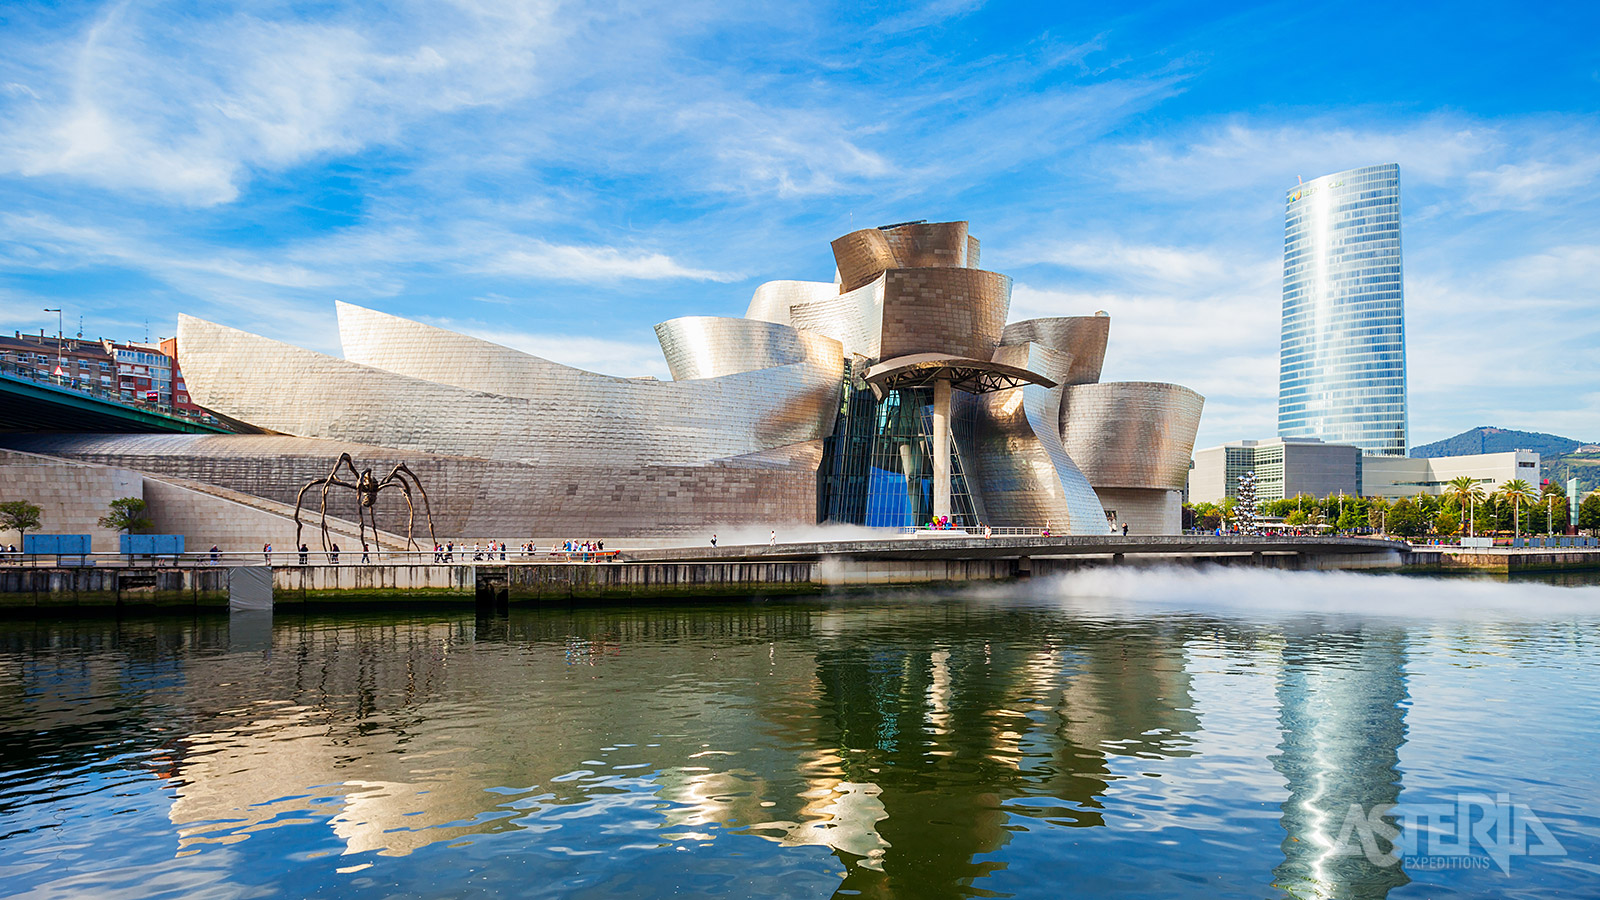 Het Guggenheim, één van de meest iconische musea in de wereld